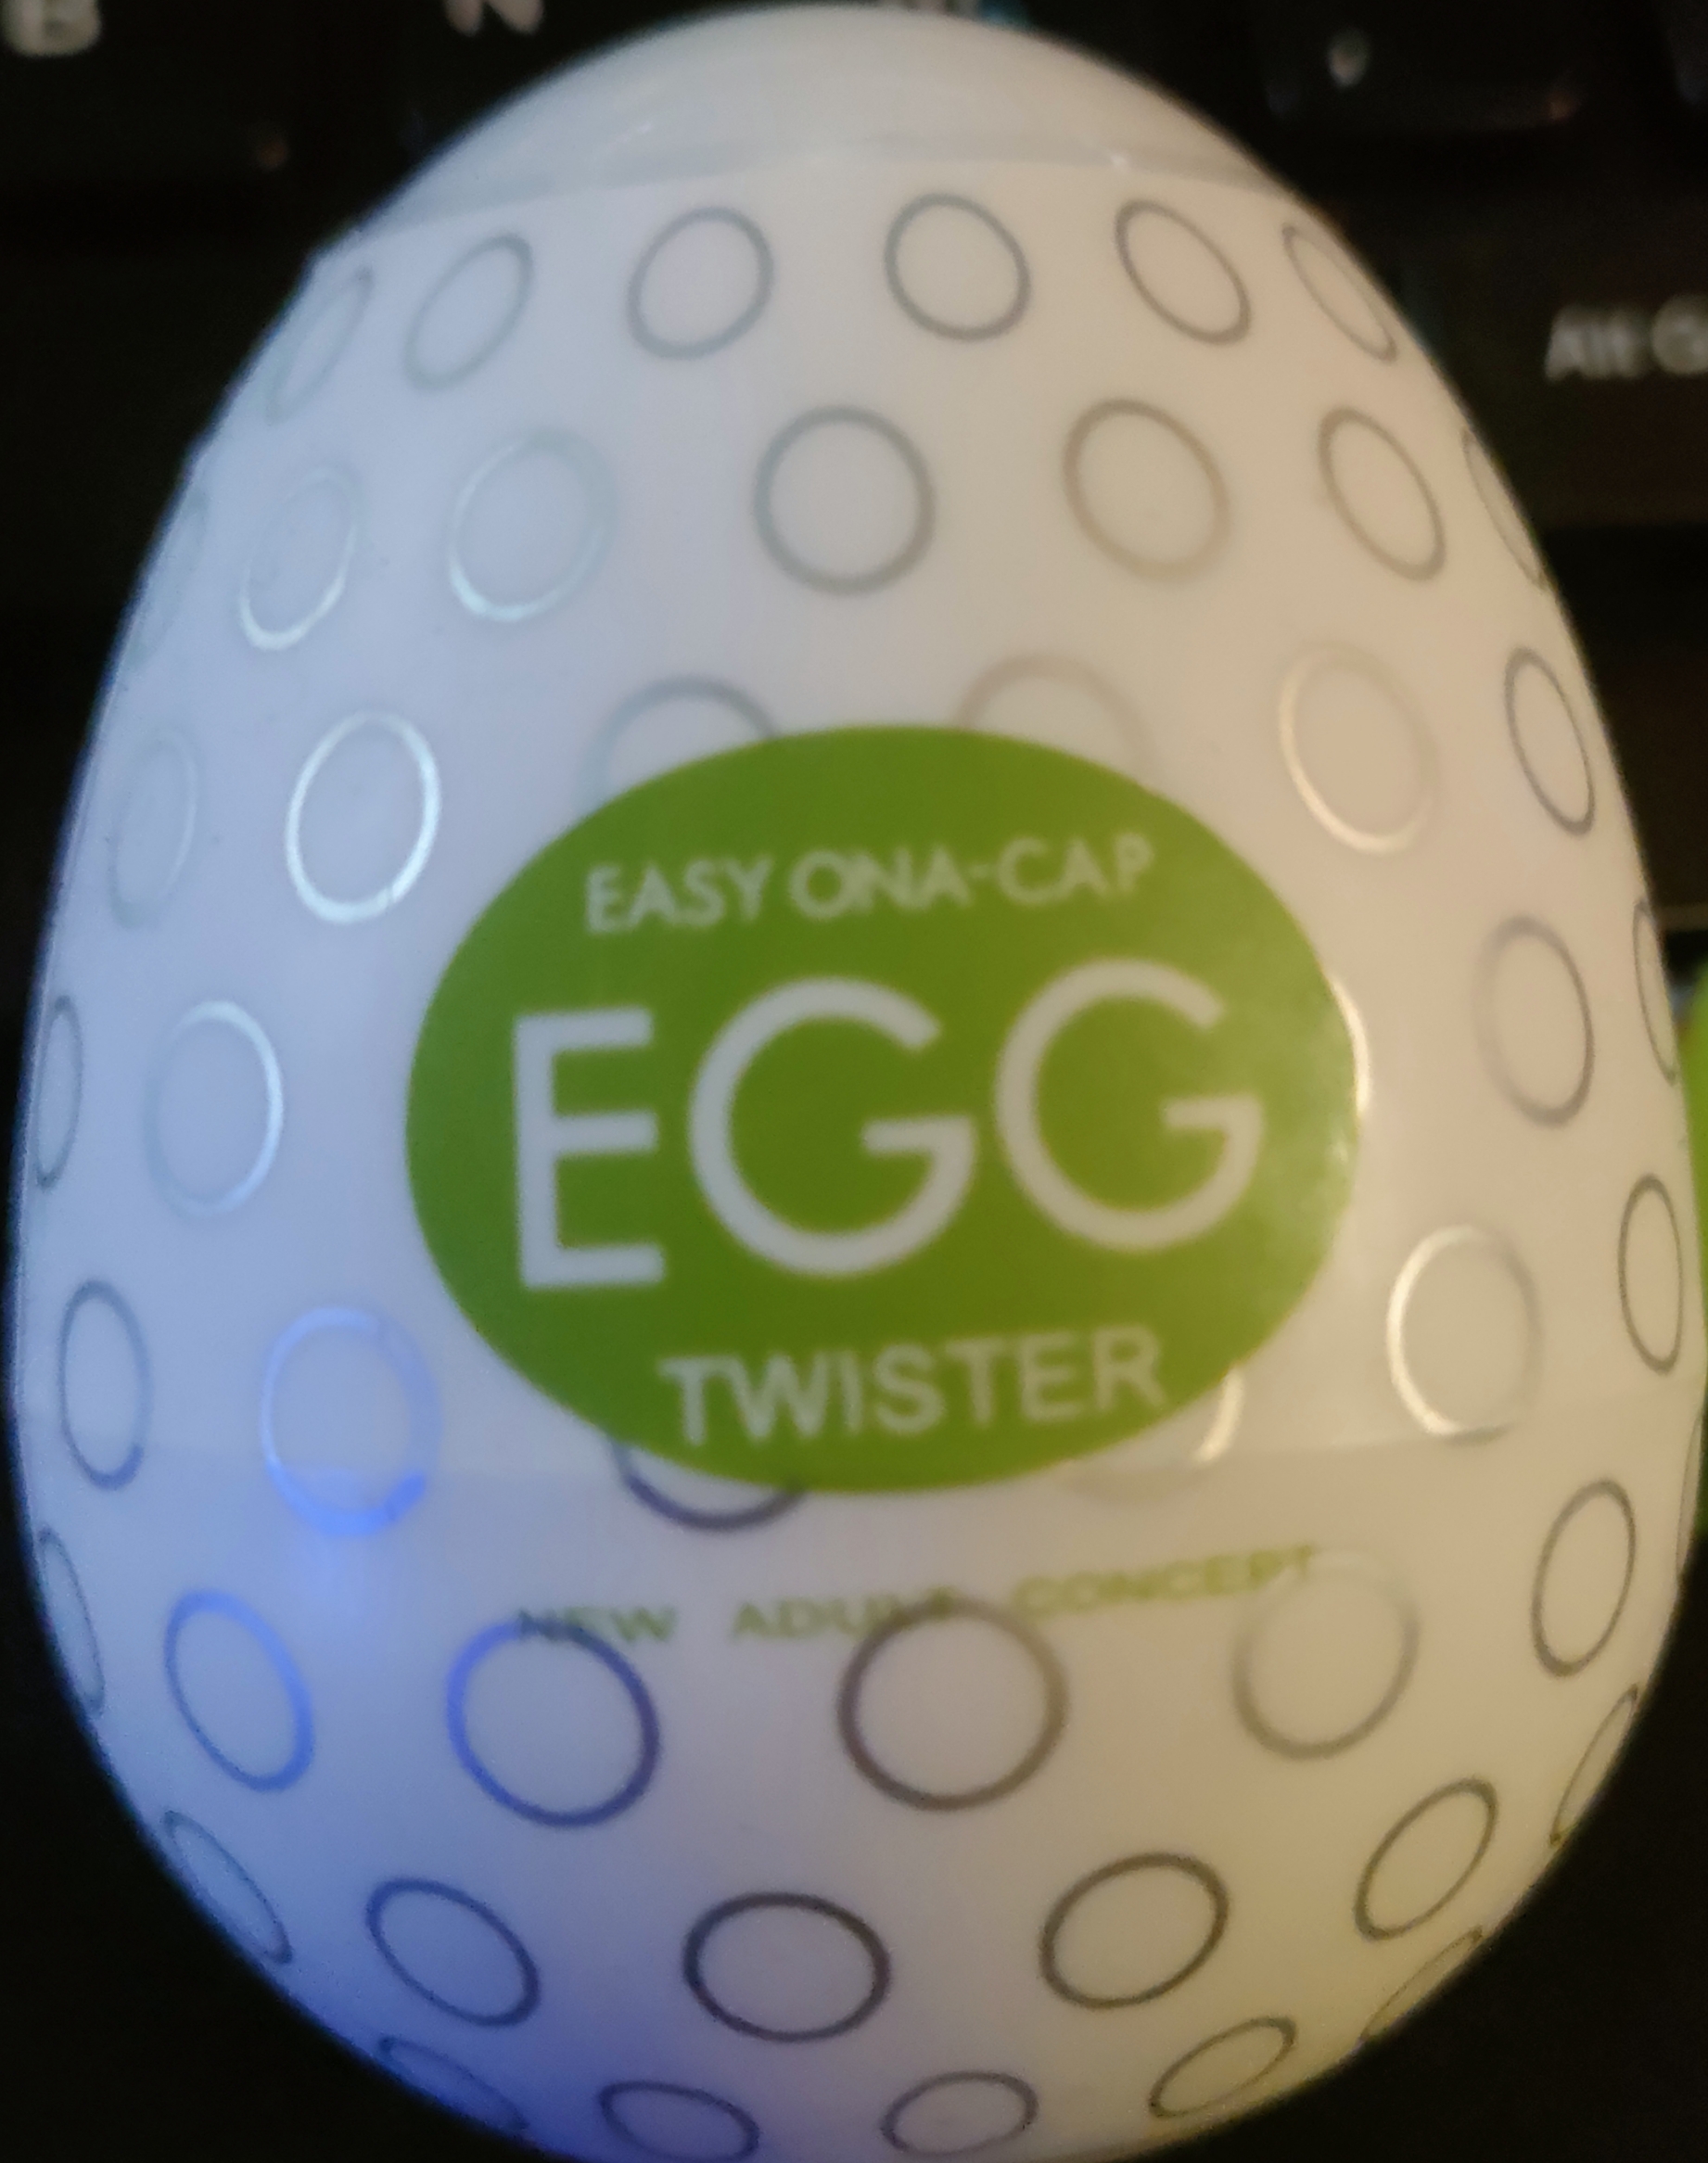 Easy Ona-cap Written Review – Adult Egg For Men